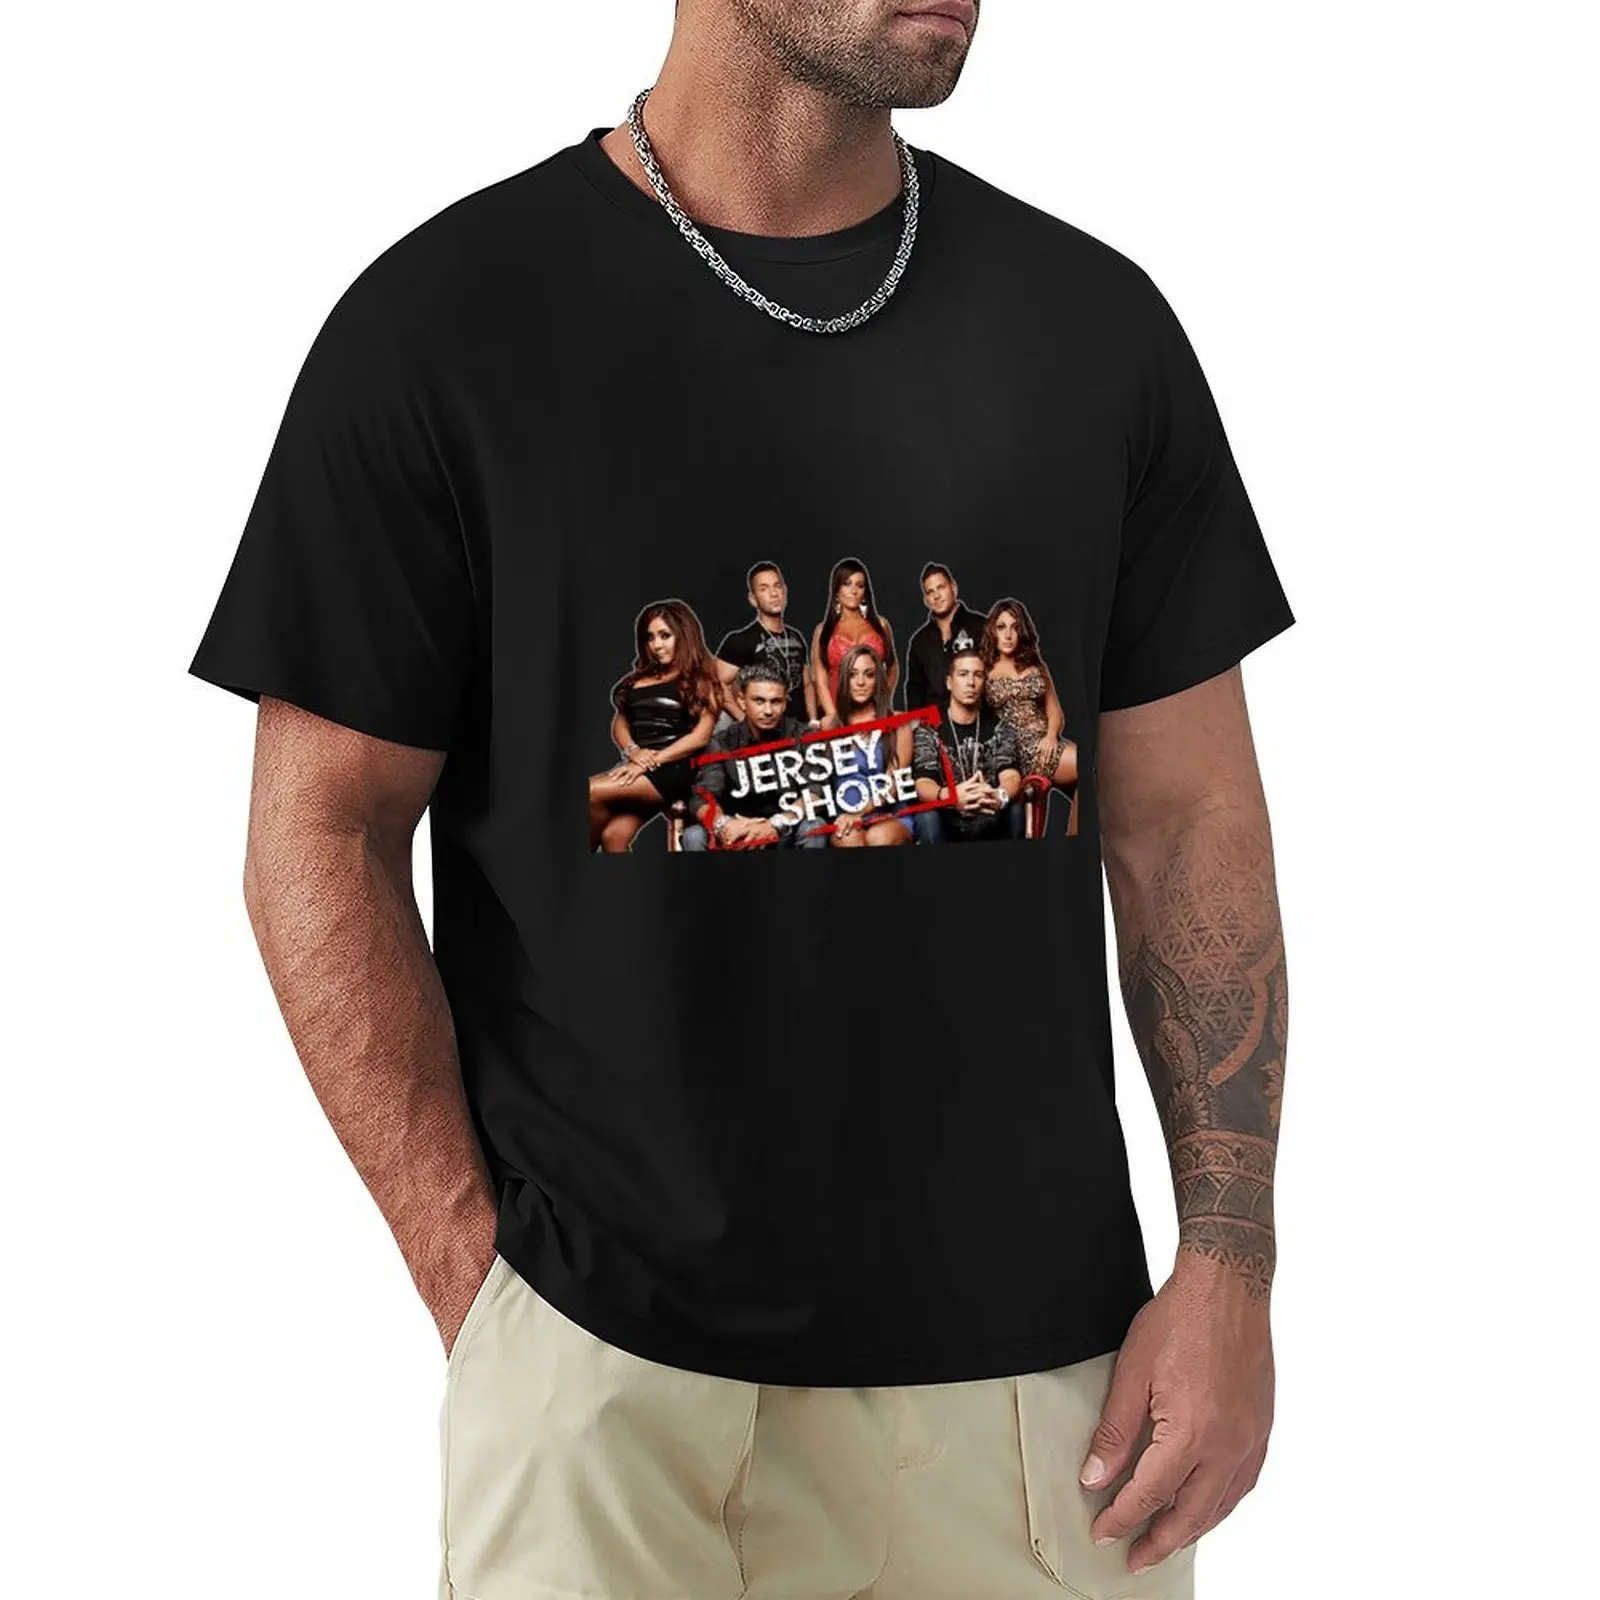 

Футболка с изображением берега из Джерси, кавайная одежда, черная уличная одежда, забавные мужские футболки